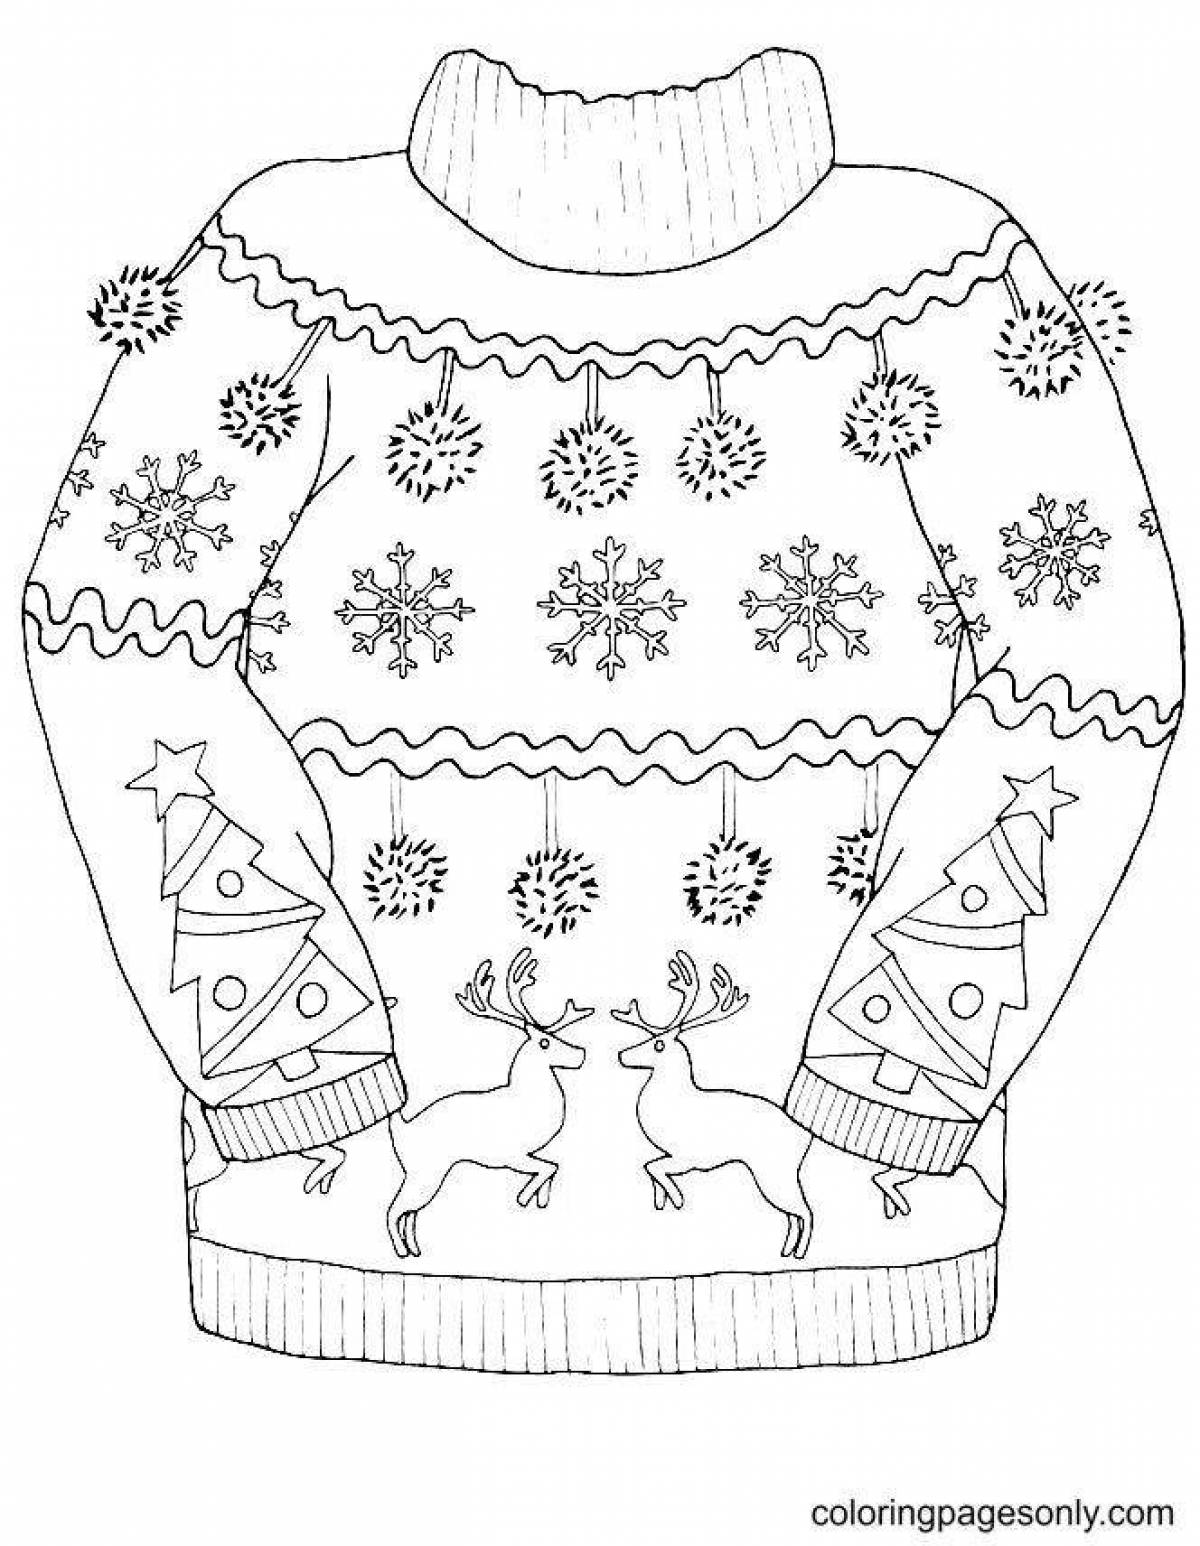 Эффектная раскраска свитера для детей 4-5 лет